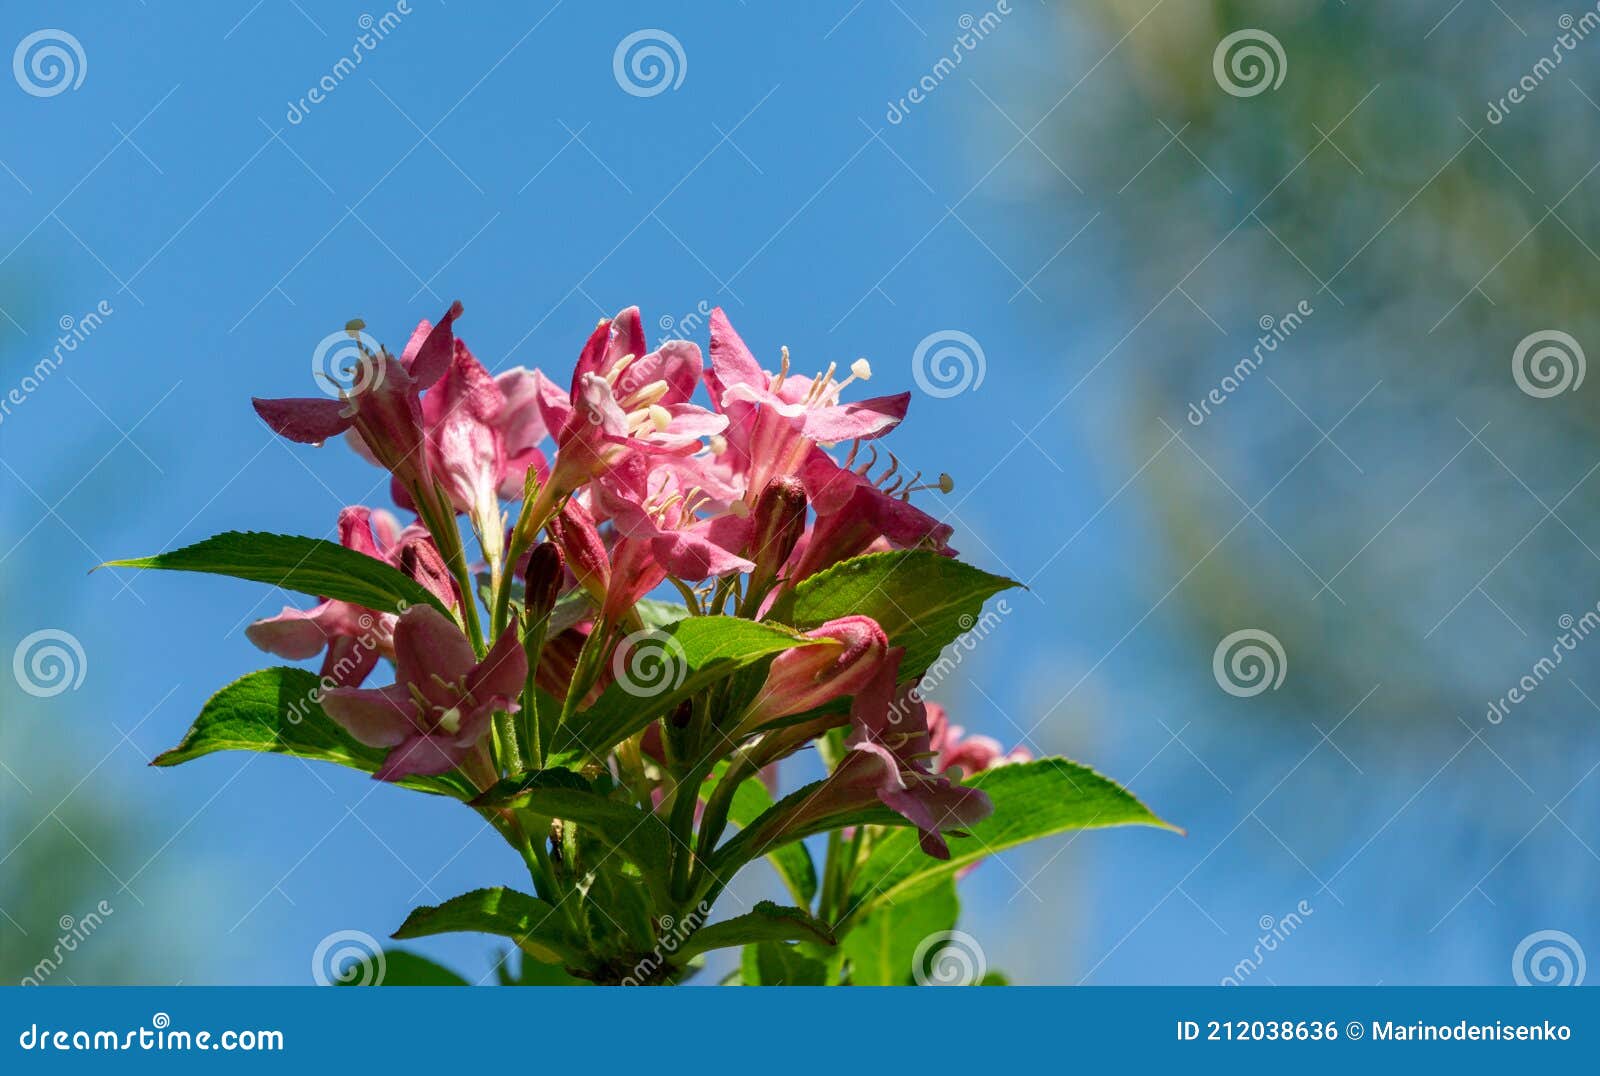 2,448 Paisaje Floral Flores Blancas Y Cielo Azul Fotos de stock - Fotos  libres de regalías de Dreamstime